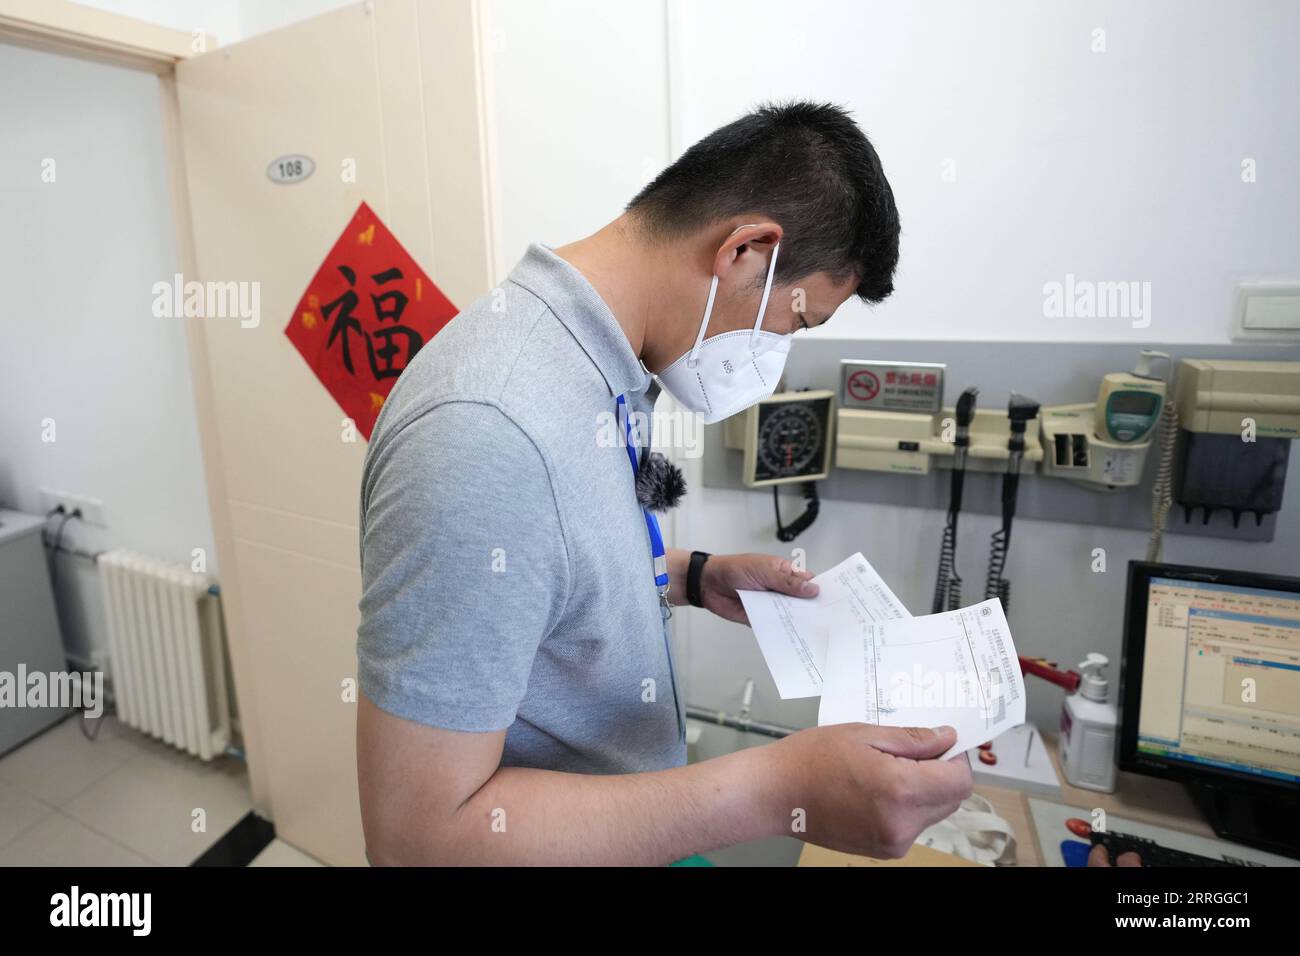 220522 -- PEKING, 22. Mai 2022 -- Mei Xiaodong überprüft die medizinischen Rezepte für Bewohner unter Hausquarantäne im Bezirk Chaoyang in Peking, Hauptstadt von China, 21. Mai 2022. Mei Xiaodong, 35, ist ein Regierungsangestellter im Bezirk Chaoyang in Peking. Mei wurde entsandt, um sich der Arbeit der Mitarbeiter an vorderster Front in einer Gemeinde im Kampf gegen COVID-19 anzuschließen und den unter häuslicher Quarantäne stehenden Bewohnern beim Kauf von Medikamenten gegen chronische Krankheiten zu helfen. Mitarbeiter in der Gemeinschaft, Ärzte und Freiwillige tragen die Verantwortung für die Beurteilung, den Kauf und die Lieferung von Medikamenten, die von Anwohnern über WeChat oder telefonische Anrufe bestellt werden Stockfoto